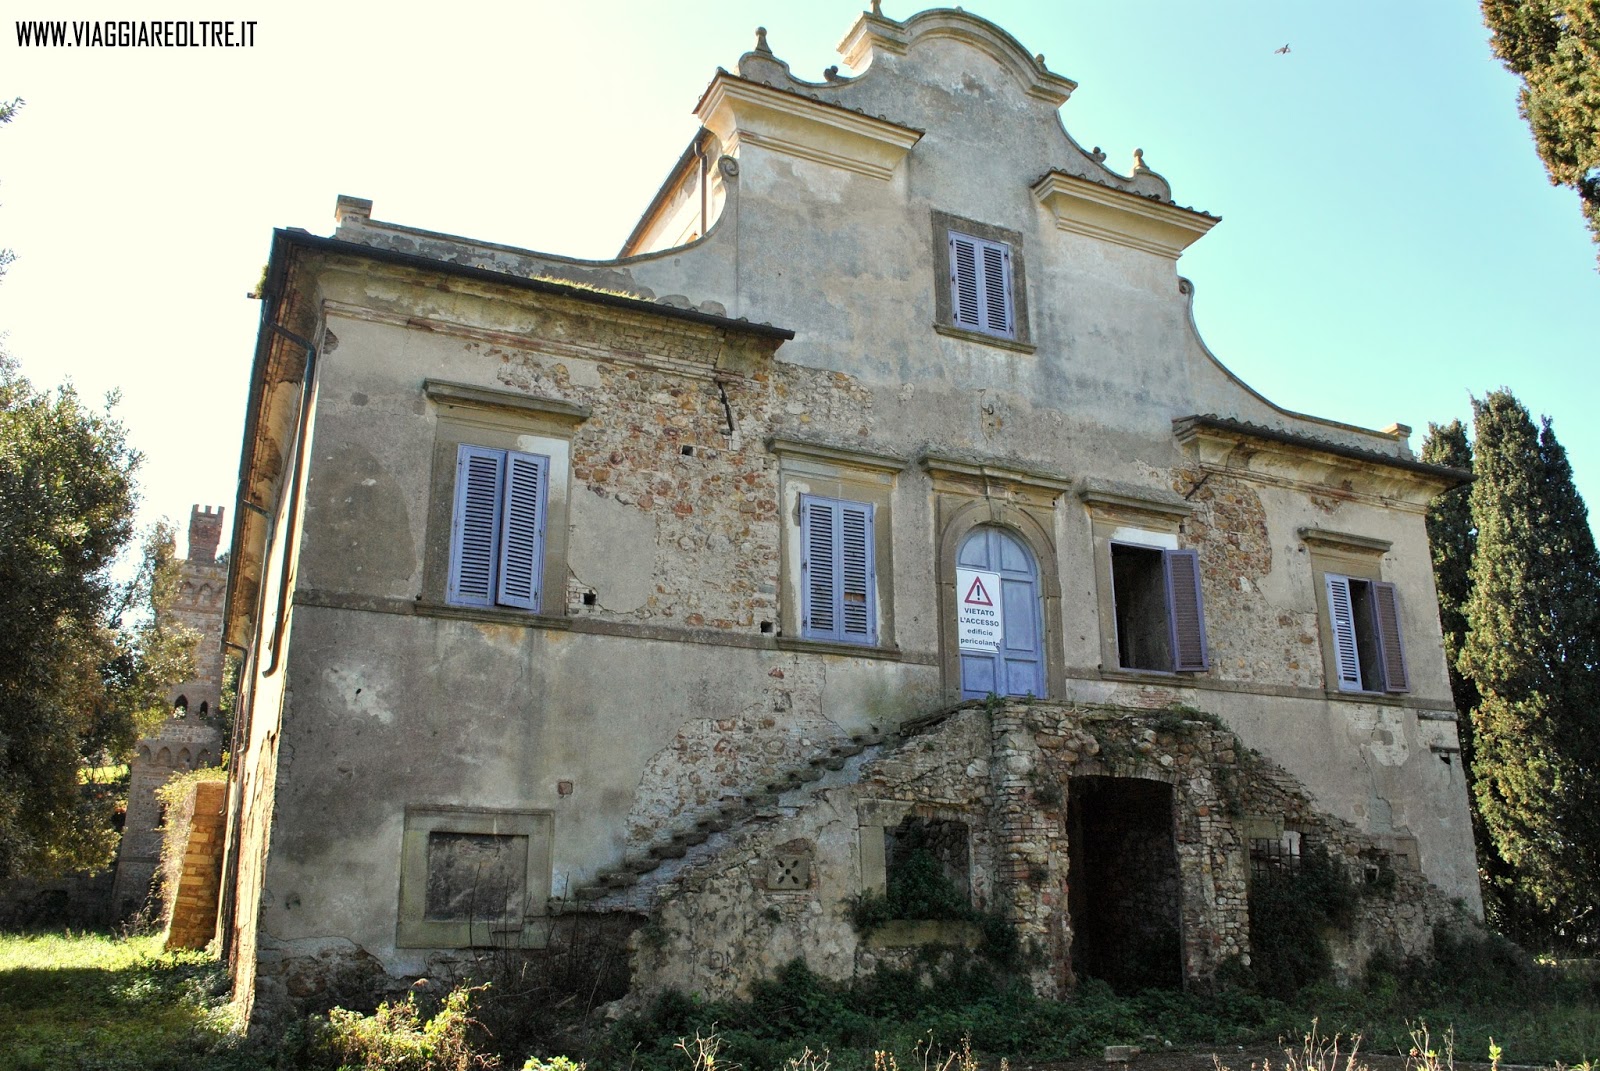 Luoghi Abbandonati In Toscana Villa Mirabella E Il Suo Tesoro Dimenticato Viaggiare Oltre